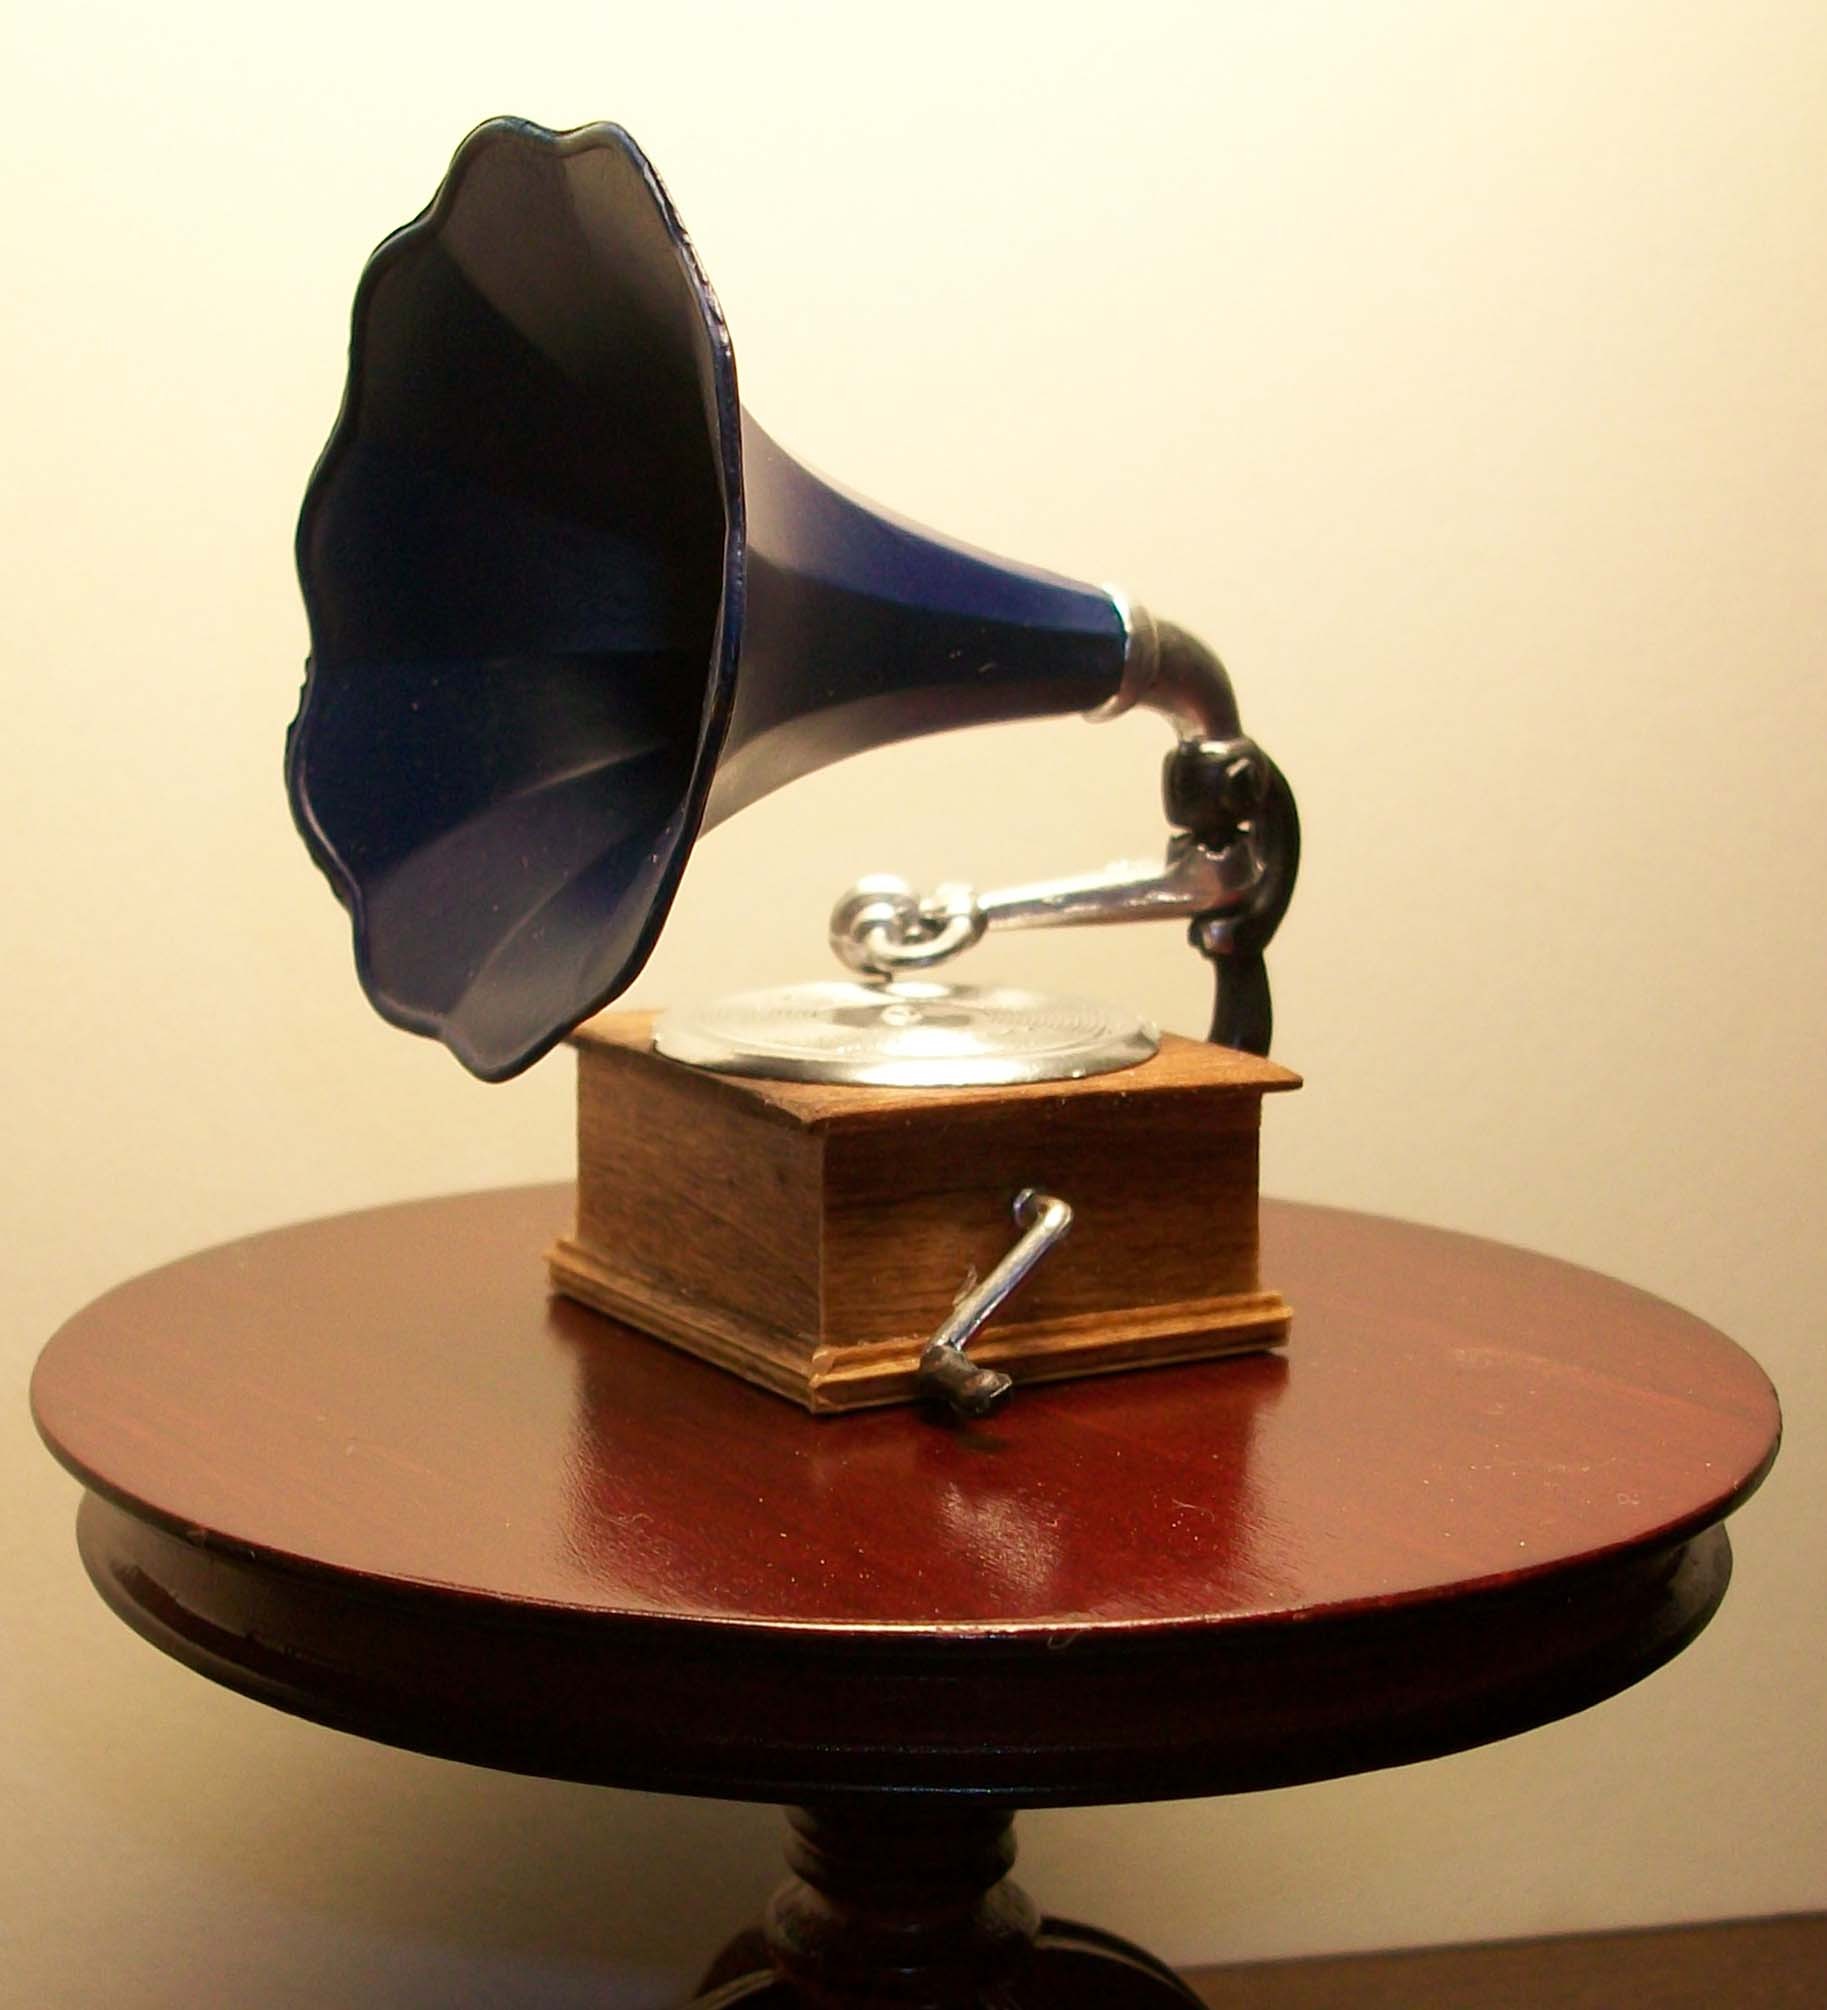 Фонограф звук. Фонограф Томаса Эдисона. Фонограф Виктрола. Фонограф 1877 года. Grammofon Victrola.